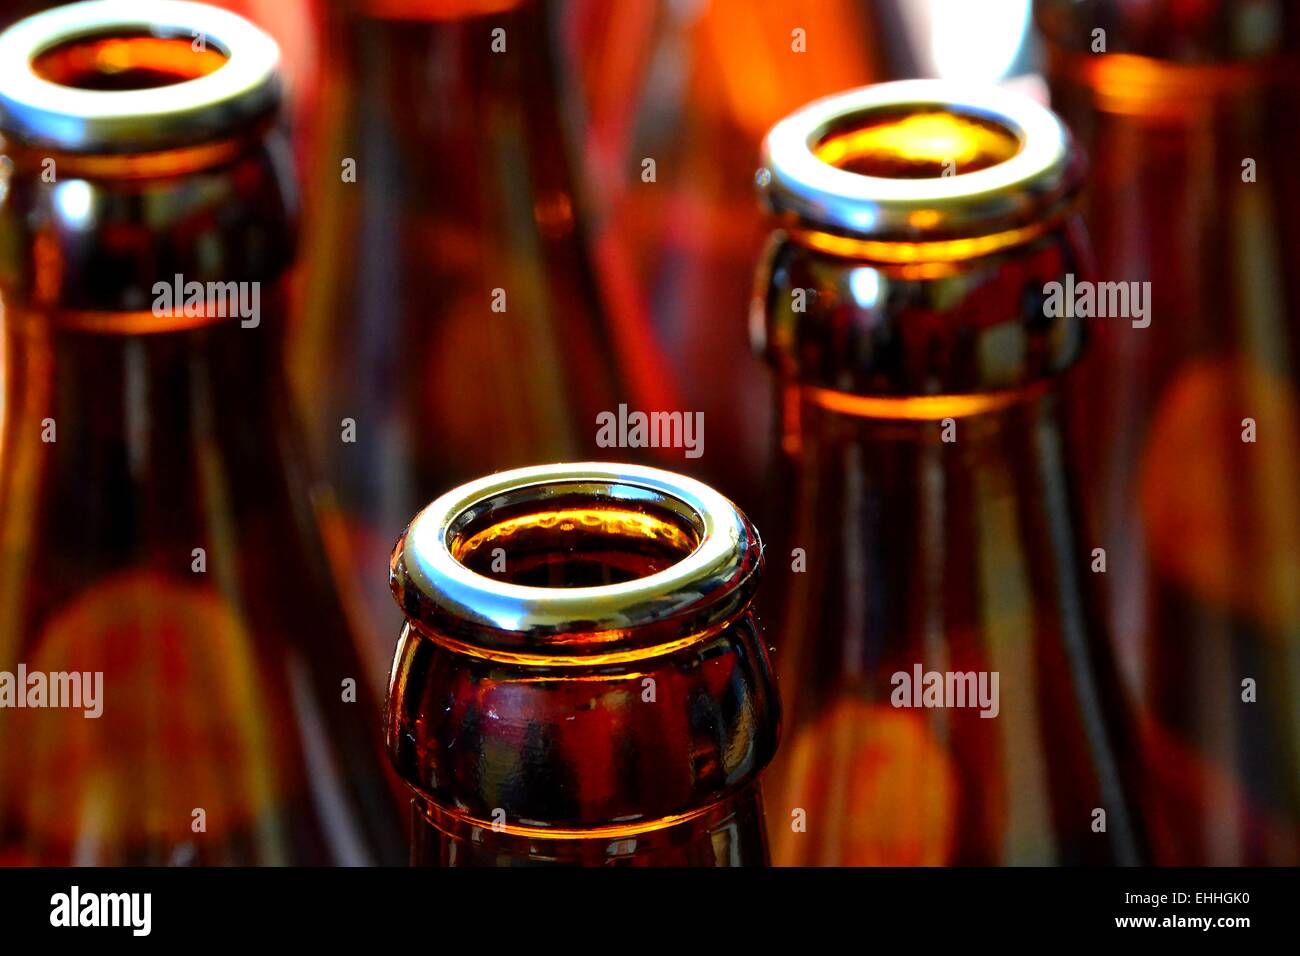 beer bottles Stock Photo